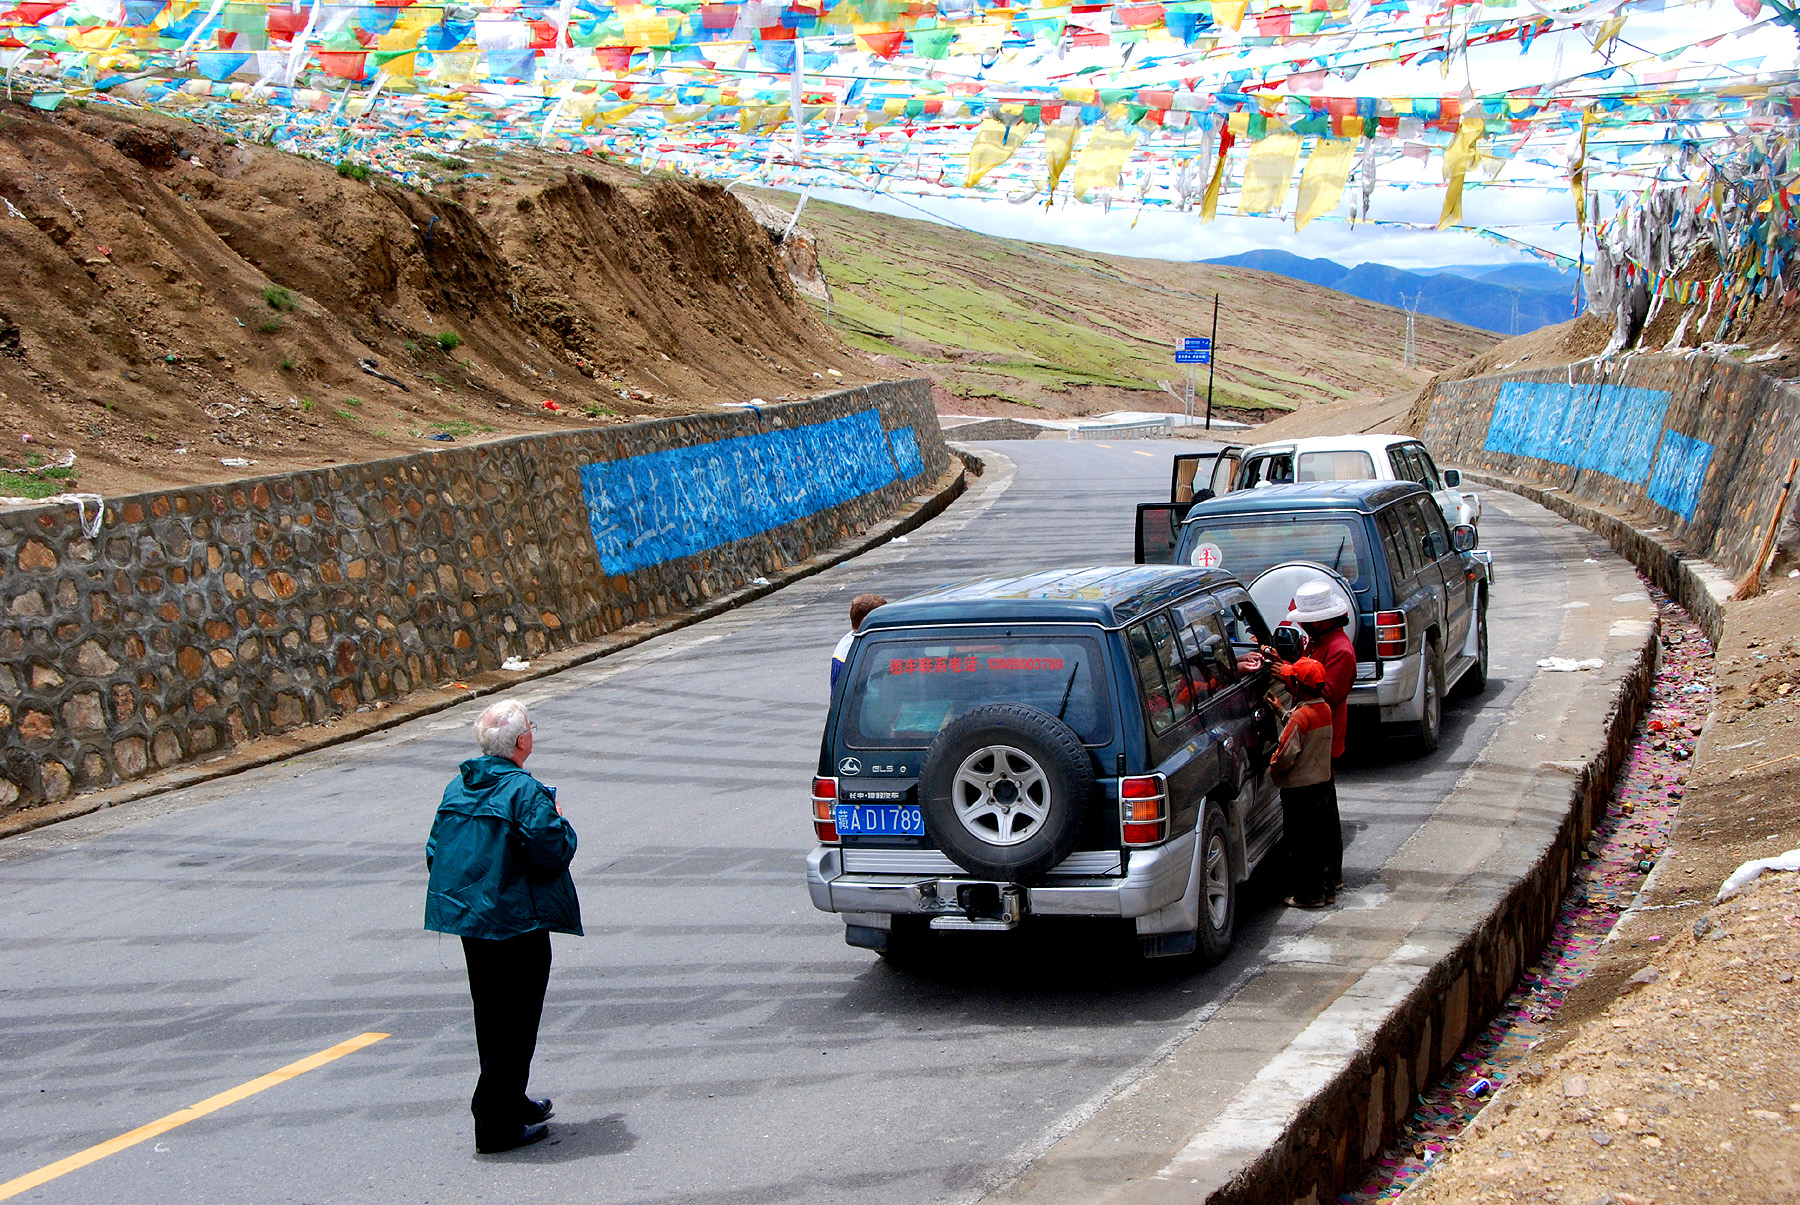 A087 - Tibet - Mountain Pass with Prayer Flags - 0857.JPG